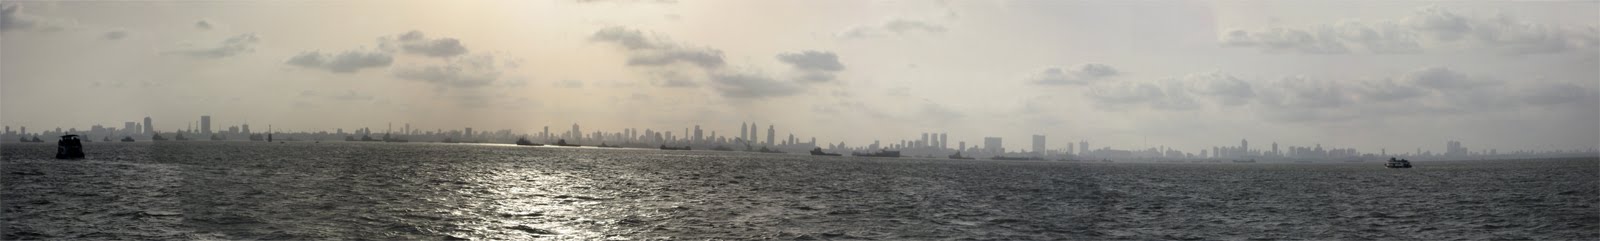 Musings in Mumbai